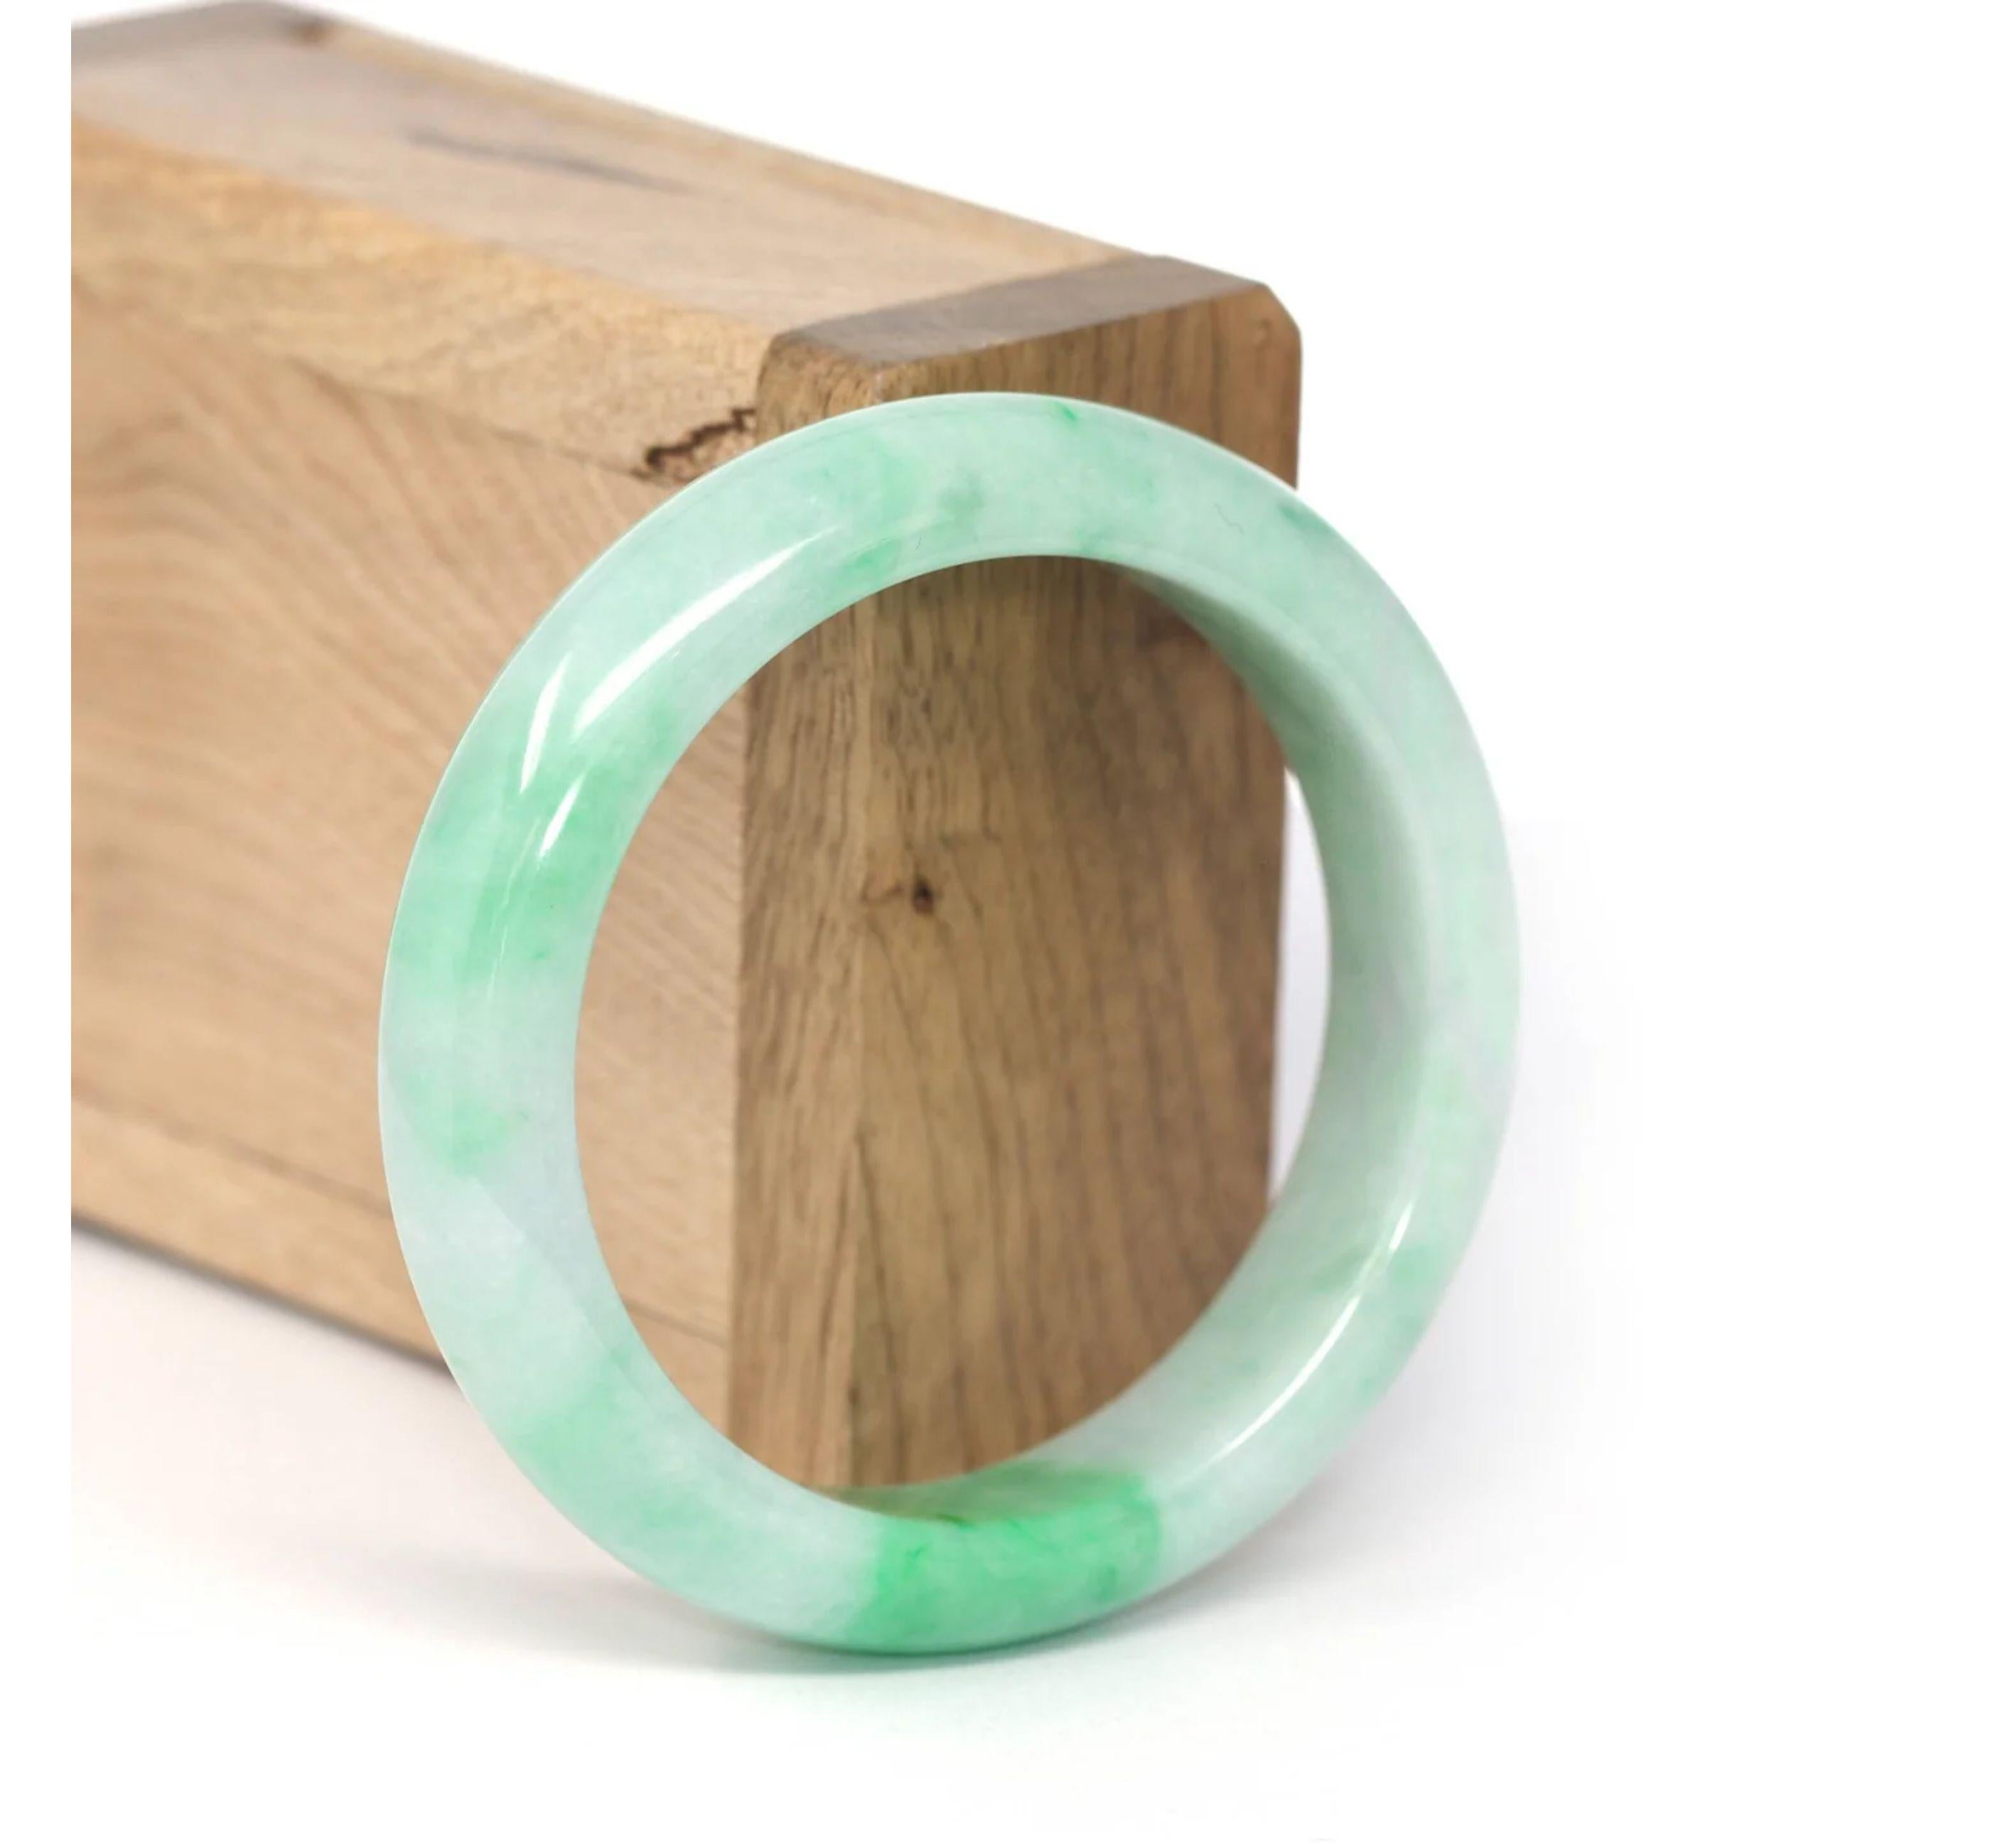 * DETAILS--- Echtes burmesisches Jadeit-Jade-Armband. Dieser Armreif ist aus echter burmesischer grüner Jadeit-Jade von sehr hoher Qualität gefertigt, die Jadetextur ist transparent und glatt. Die grüne Farbe ist wirklich eine faszinierende